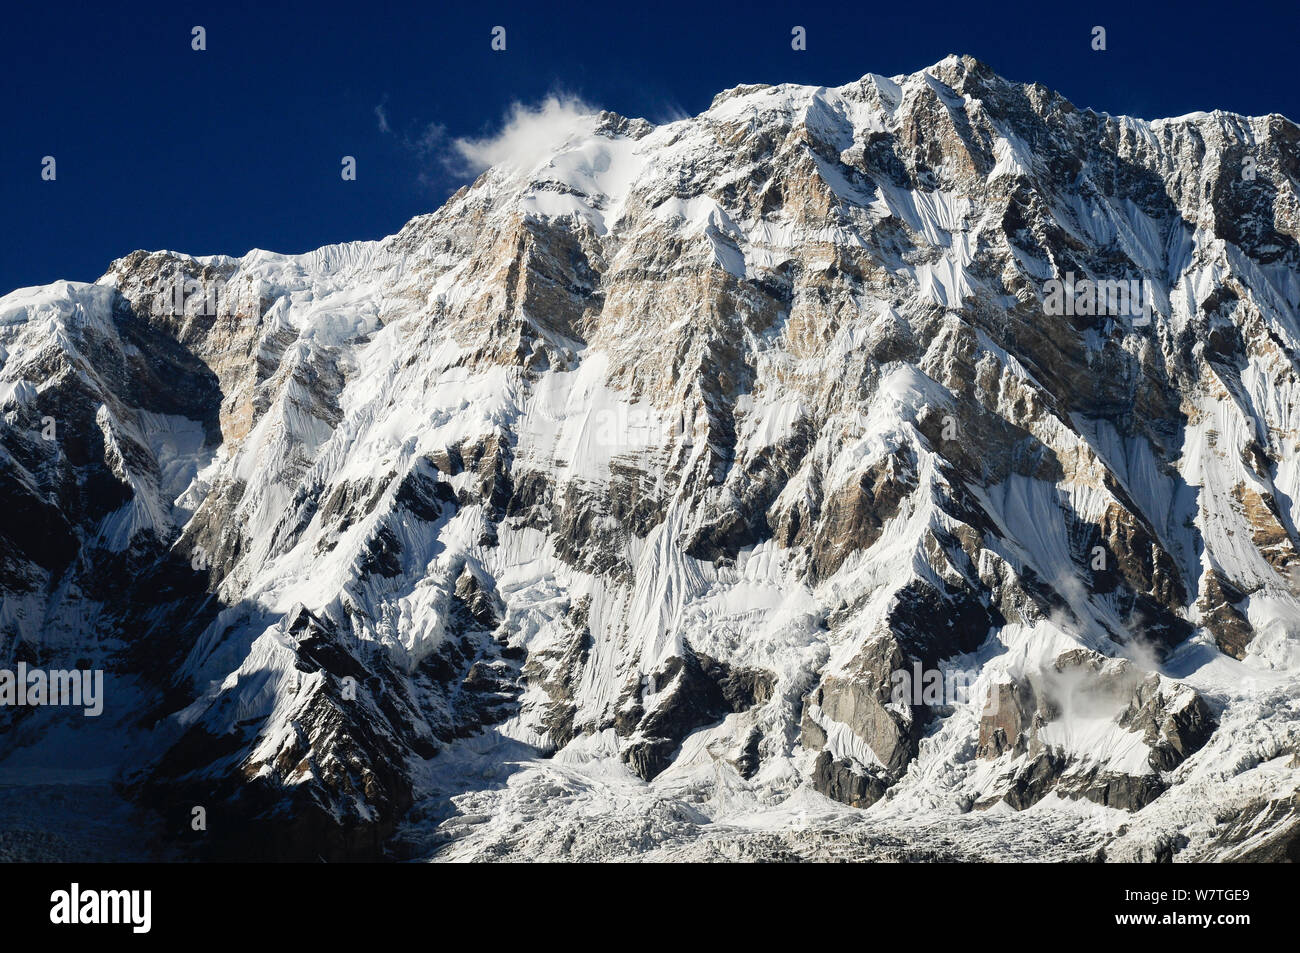 Mount Annapurna I (8091m) à partir du camp de base, de l'Annapurna Sanctuary, Népal central, novembre 2011. Banque D'Images